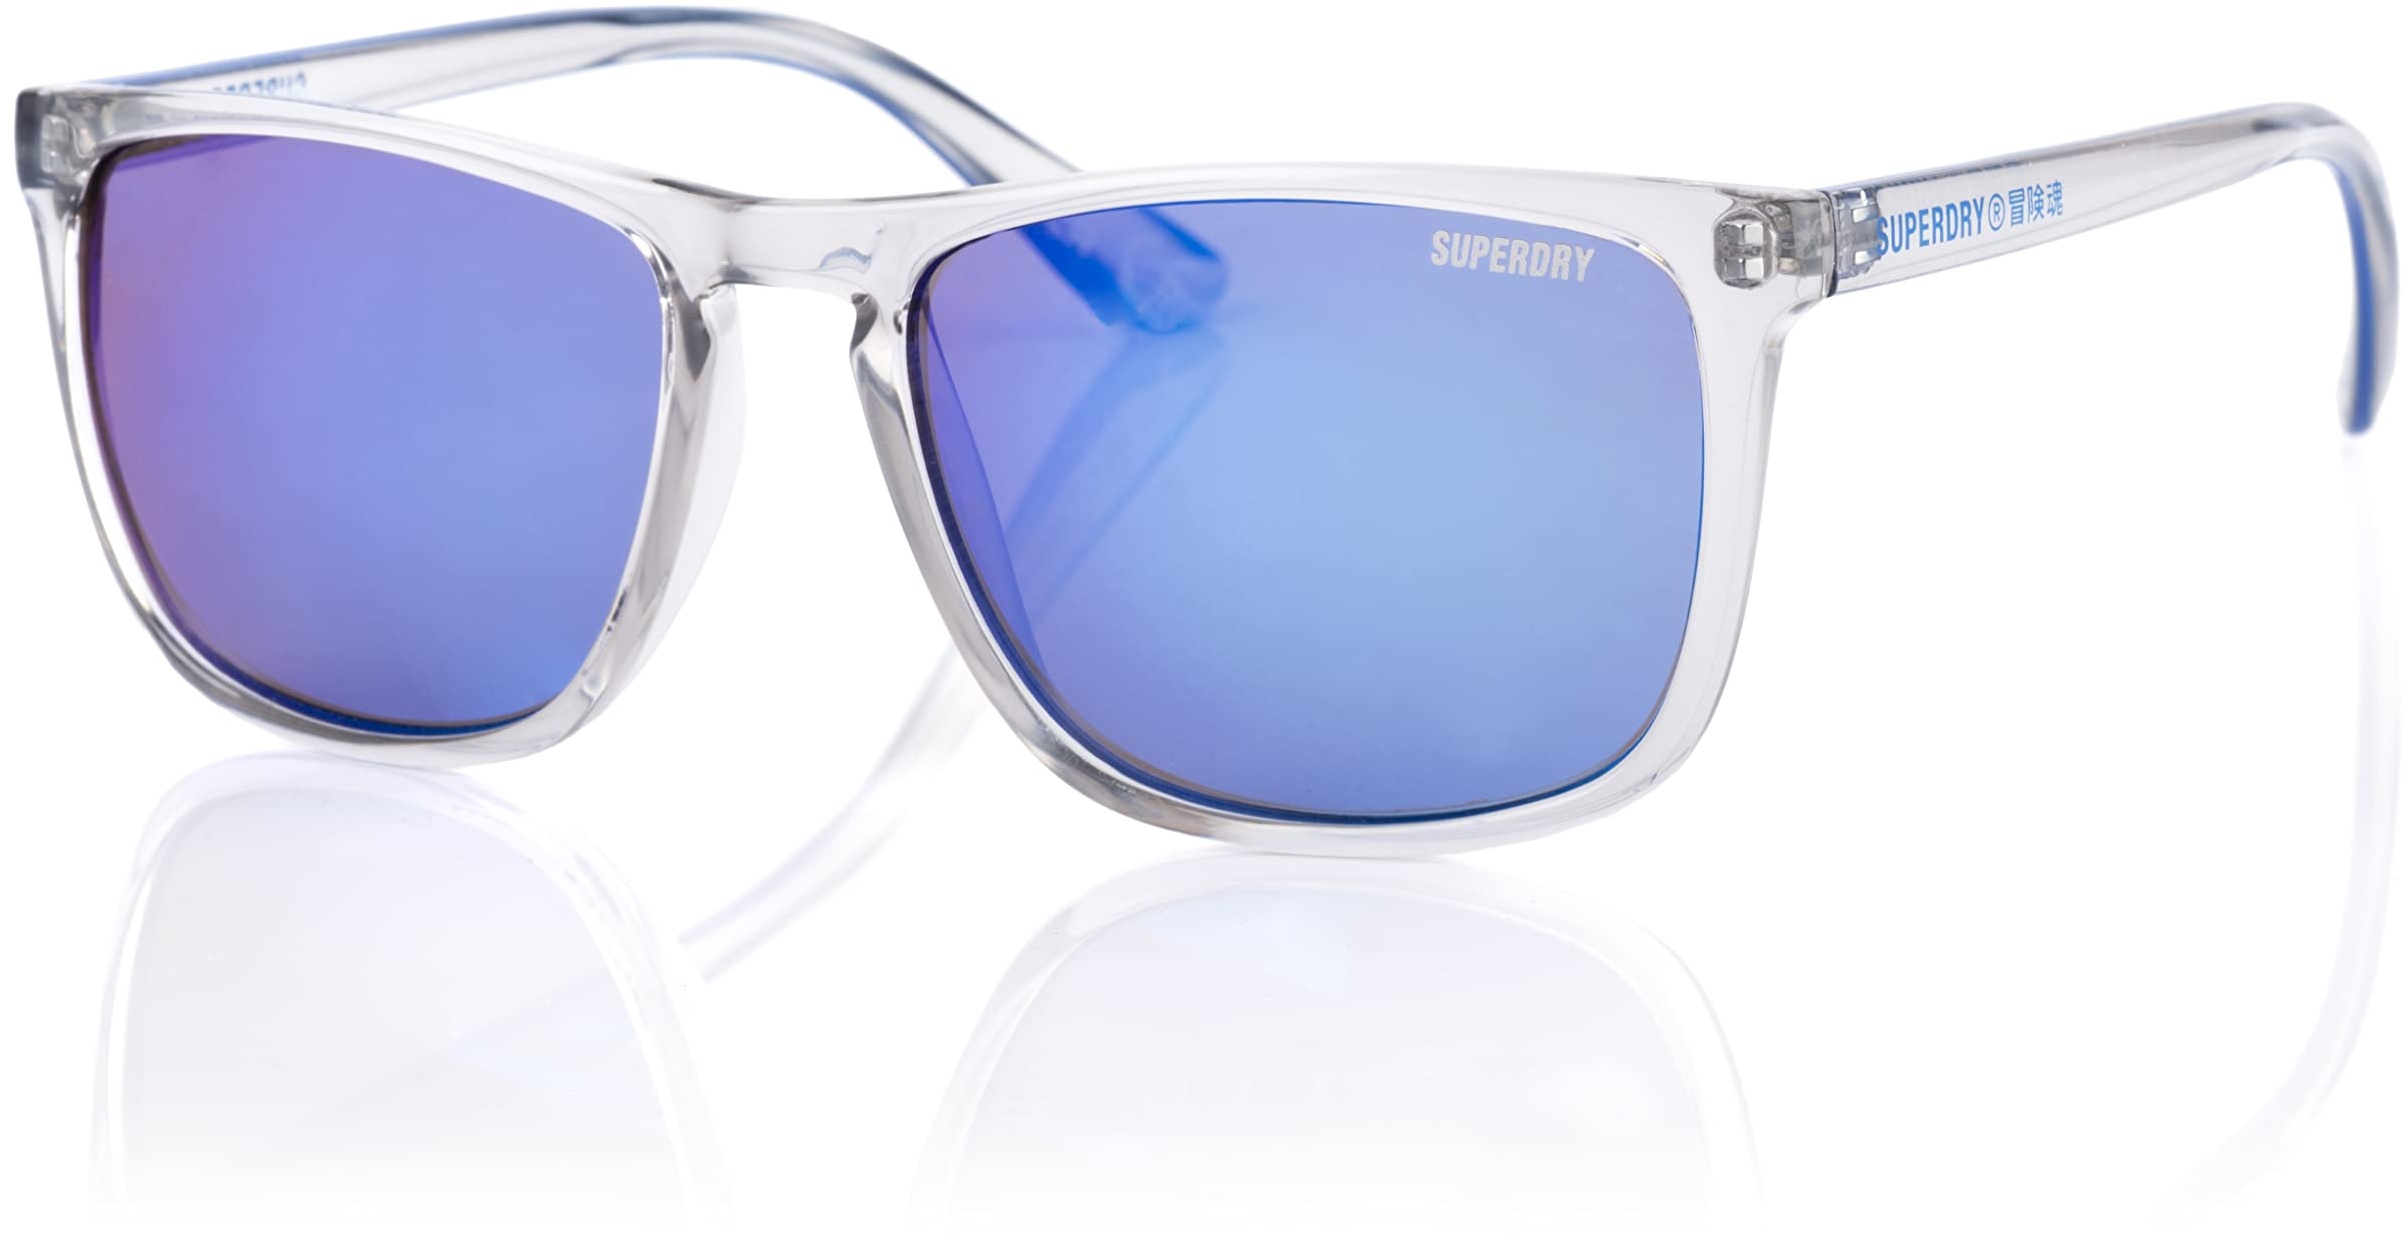 Superdry SDS SHOCKWAVE Sonnenbrille 153 Crystal Blue/Blue Mirror, Kristallblau/blauer Spiegel, Einheitsgröße - Einheitsgröße